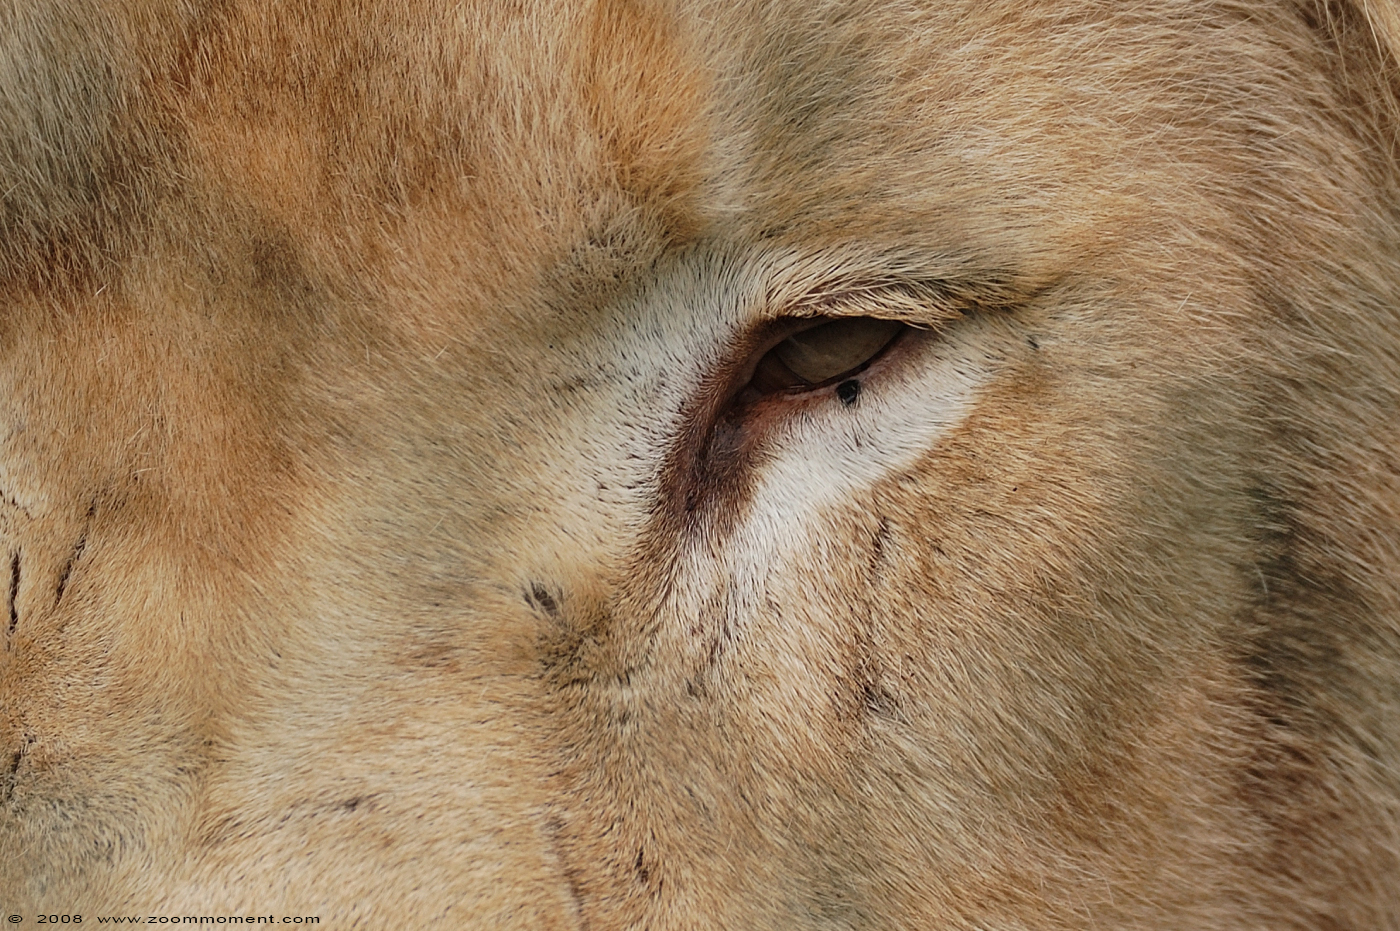 witte leeuw  ( Panthera leo )  white lion
Apollo
Keywords: Olmen zoo Belgium witte leeuw Panthera leo white lion Apollo